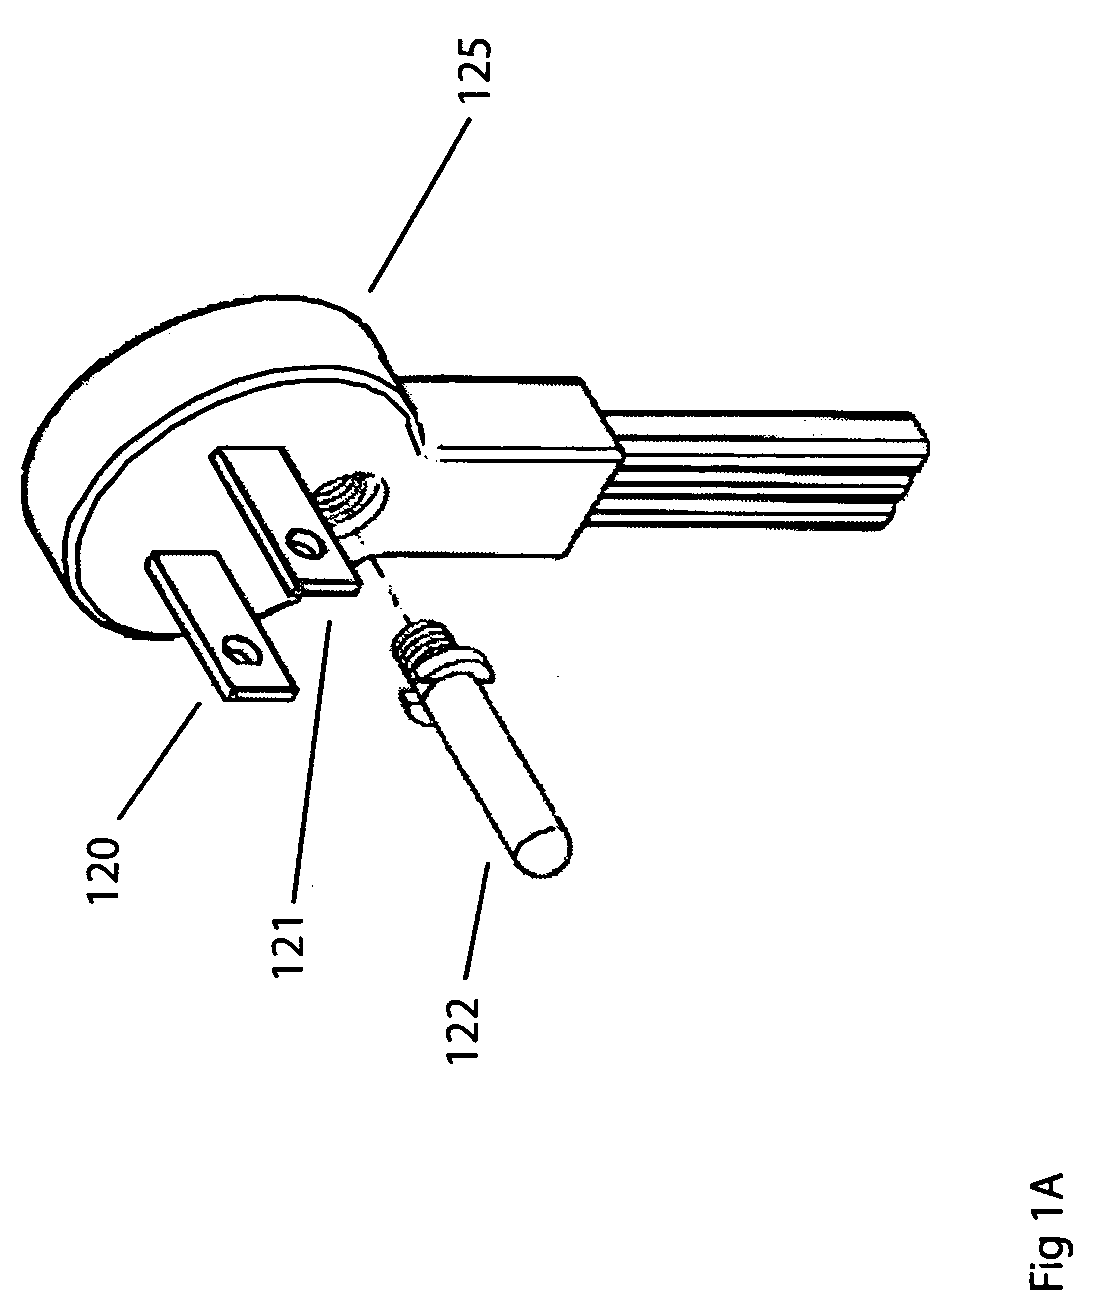 Pass-through grounding plug